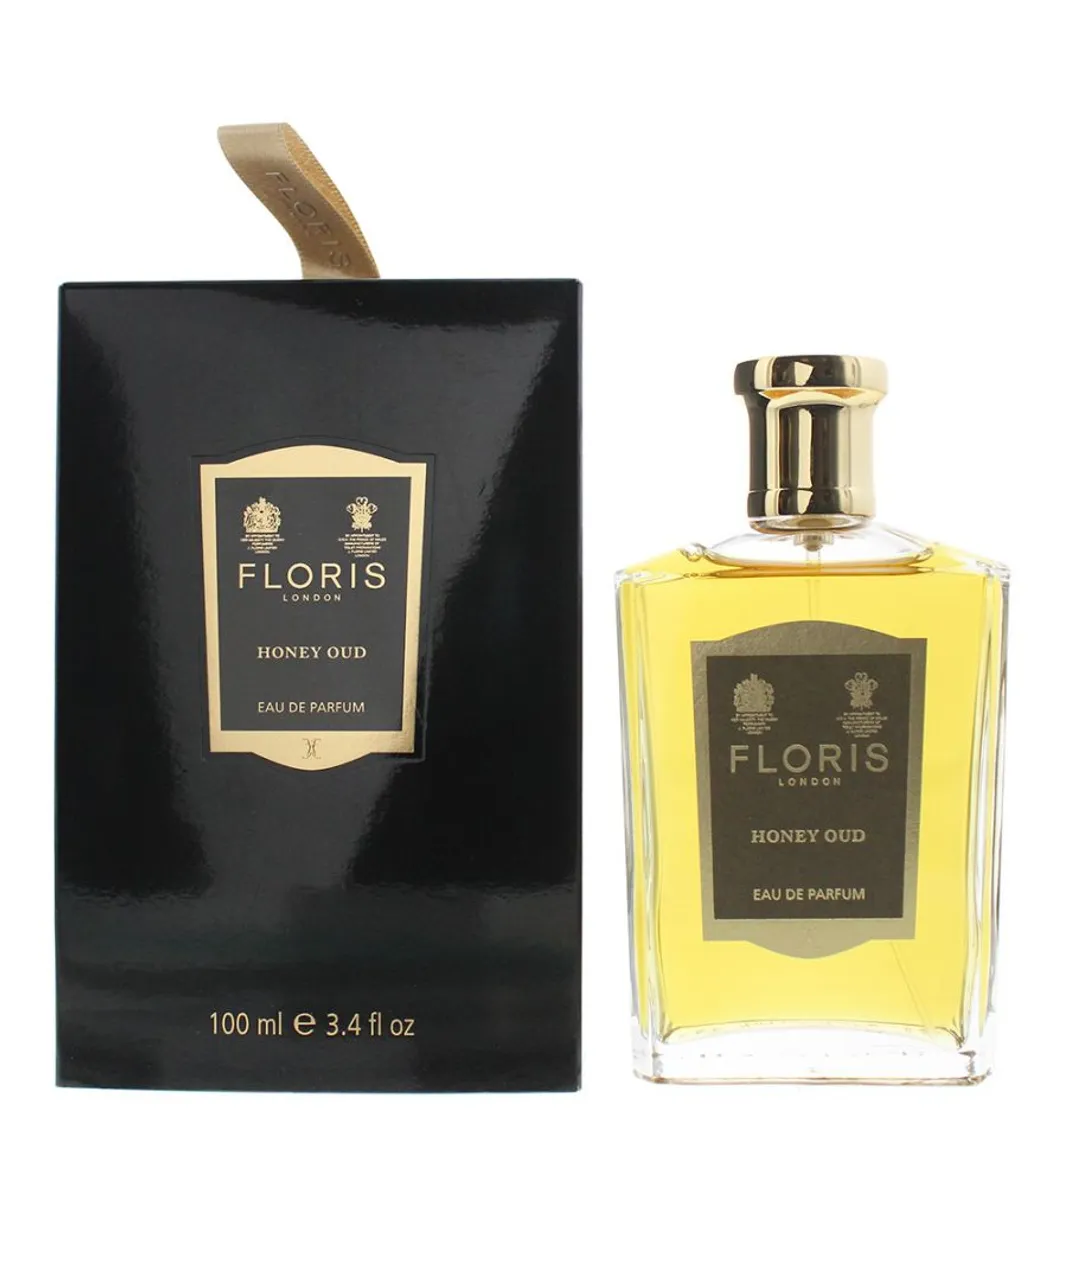 Floris Unisex Honey Oud Eau de Parfum 100ml - One Size